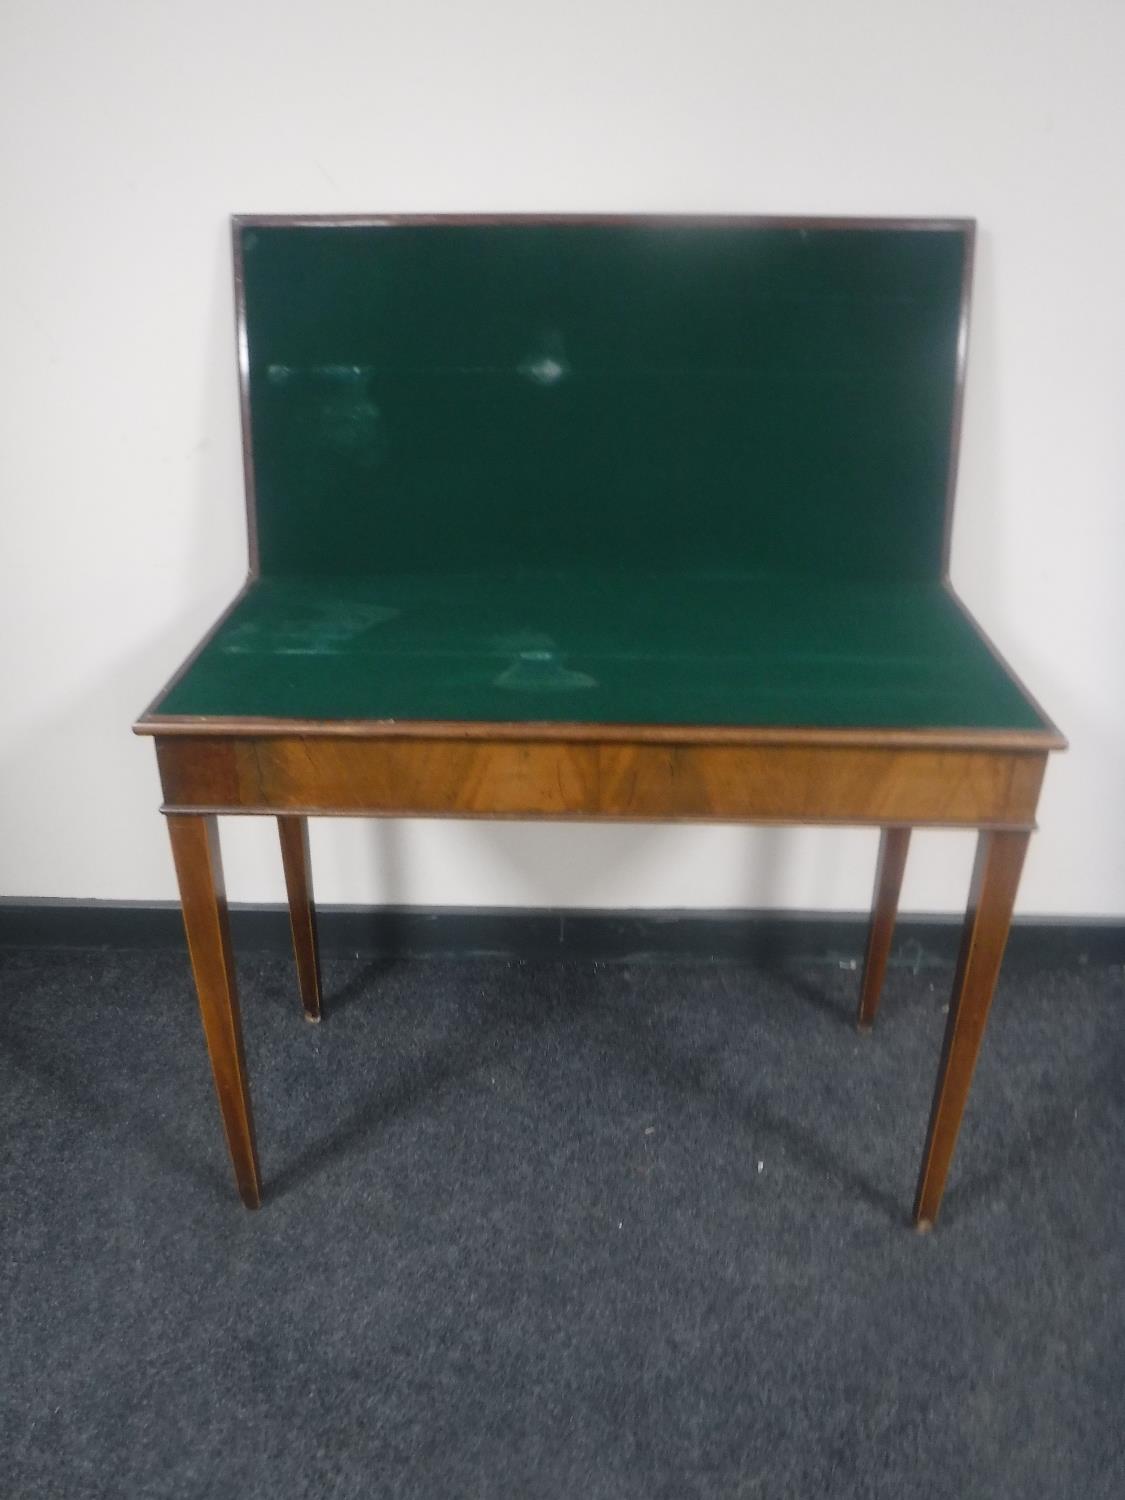 A 19th century mahogany foldover tea table